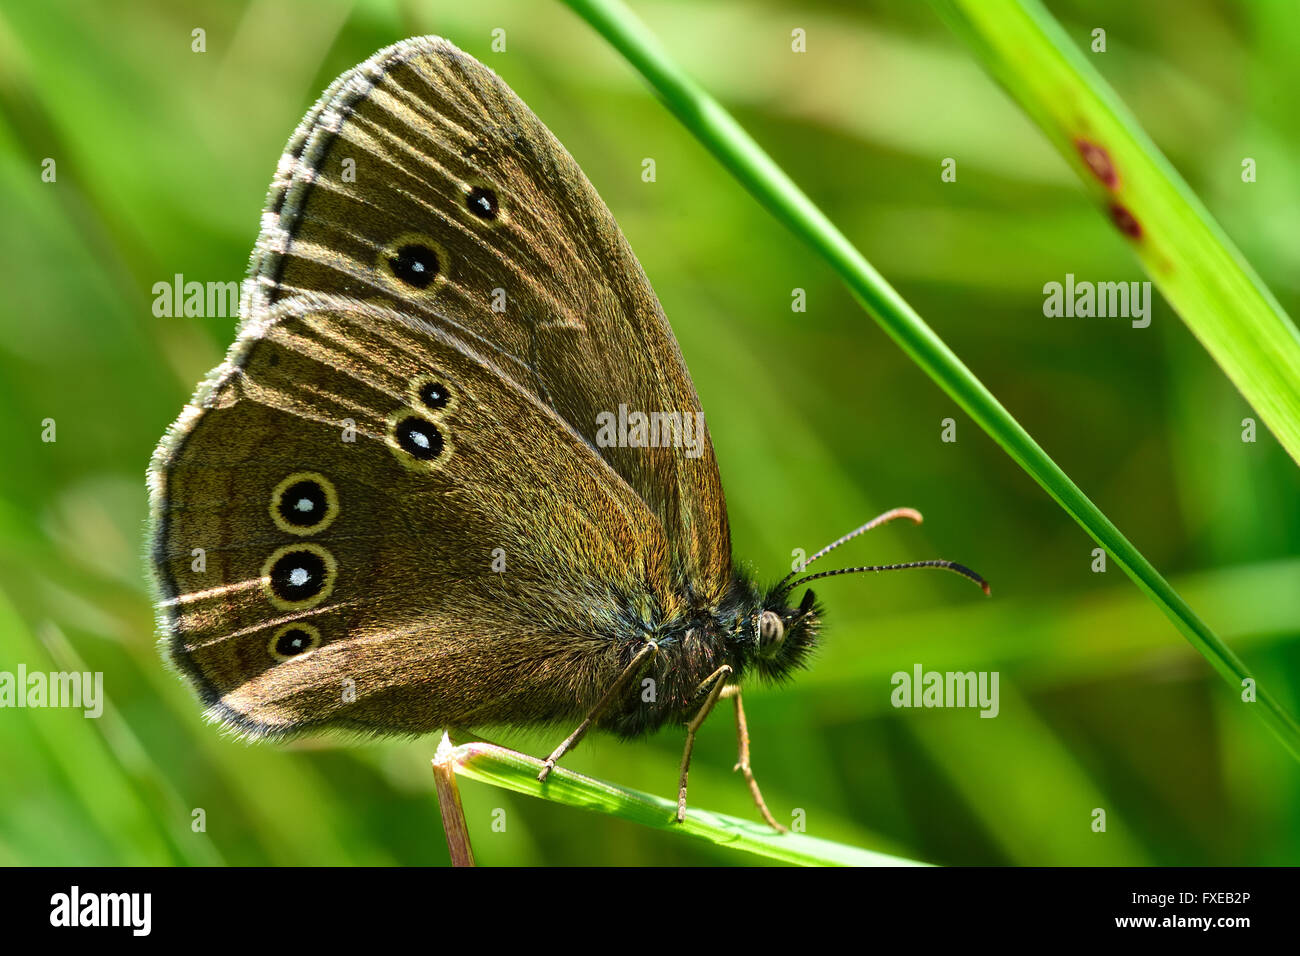 Ringlet butterfly (Aphantopus hyperantus). Butterfly nella famiglia Nymphalidae a riposo su una lama di erba, mostrando i falsi occhi Foto Stock